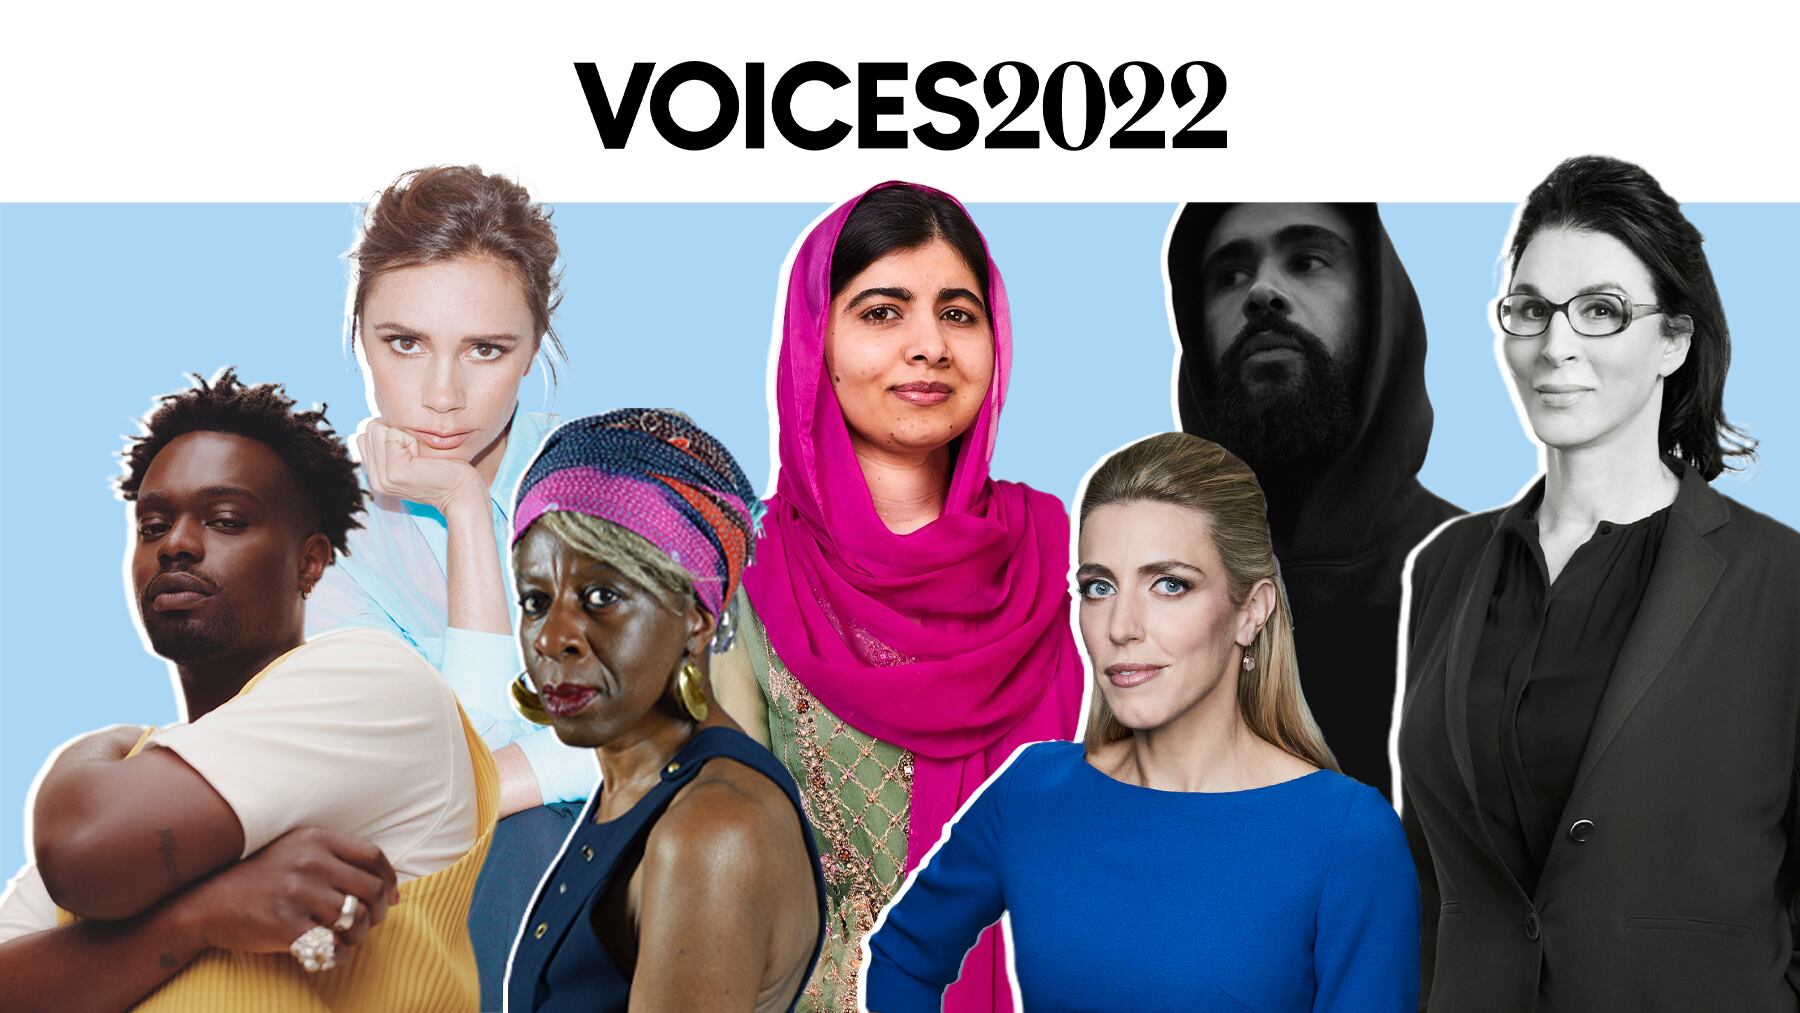 Voices 2022